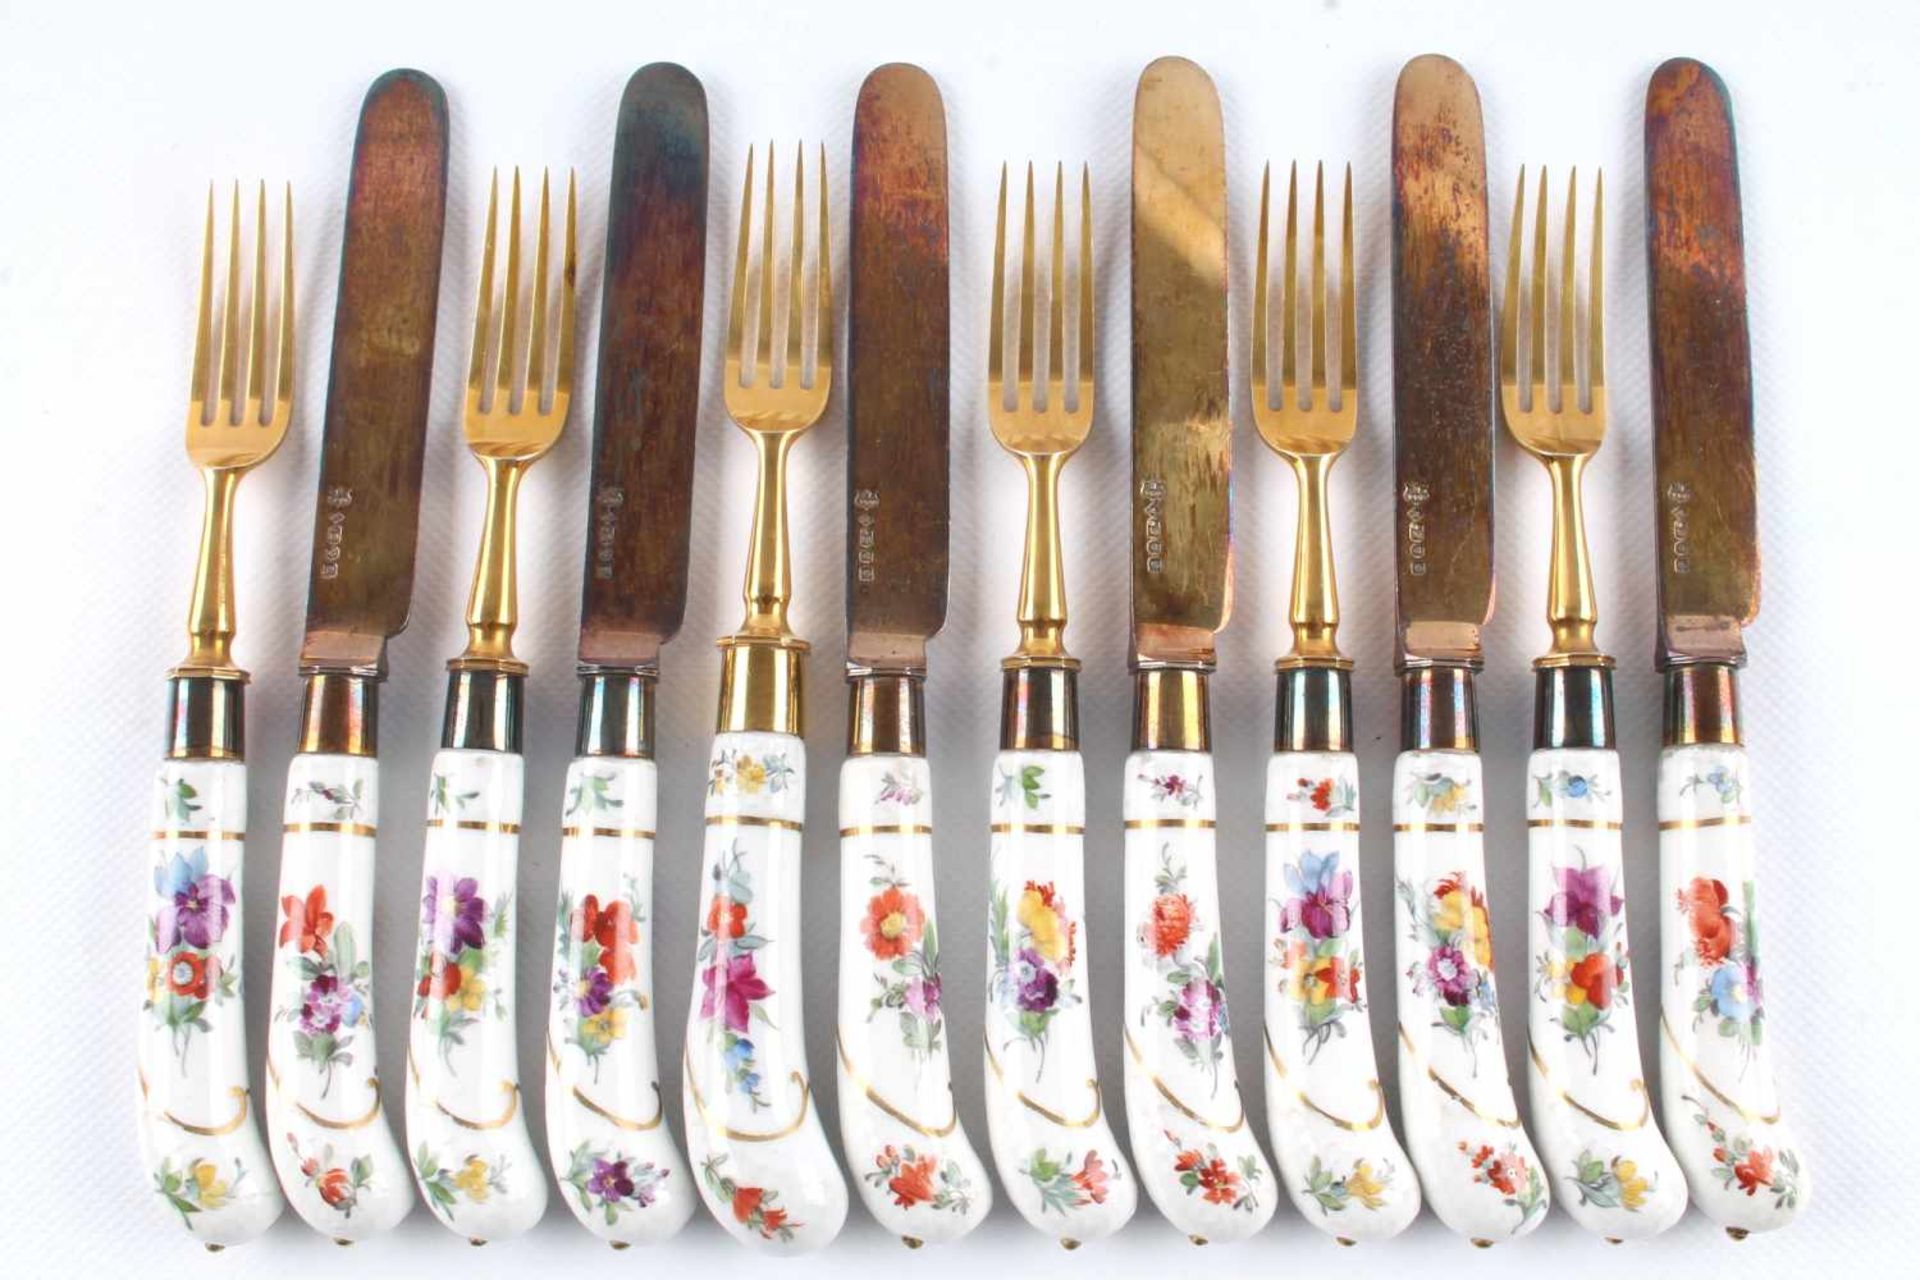 Meissen Besteck 18. Jahrhundert - sechs Messer und sechs Gabeln, 6 knifes and 6 forks 18th cenutry,